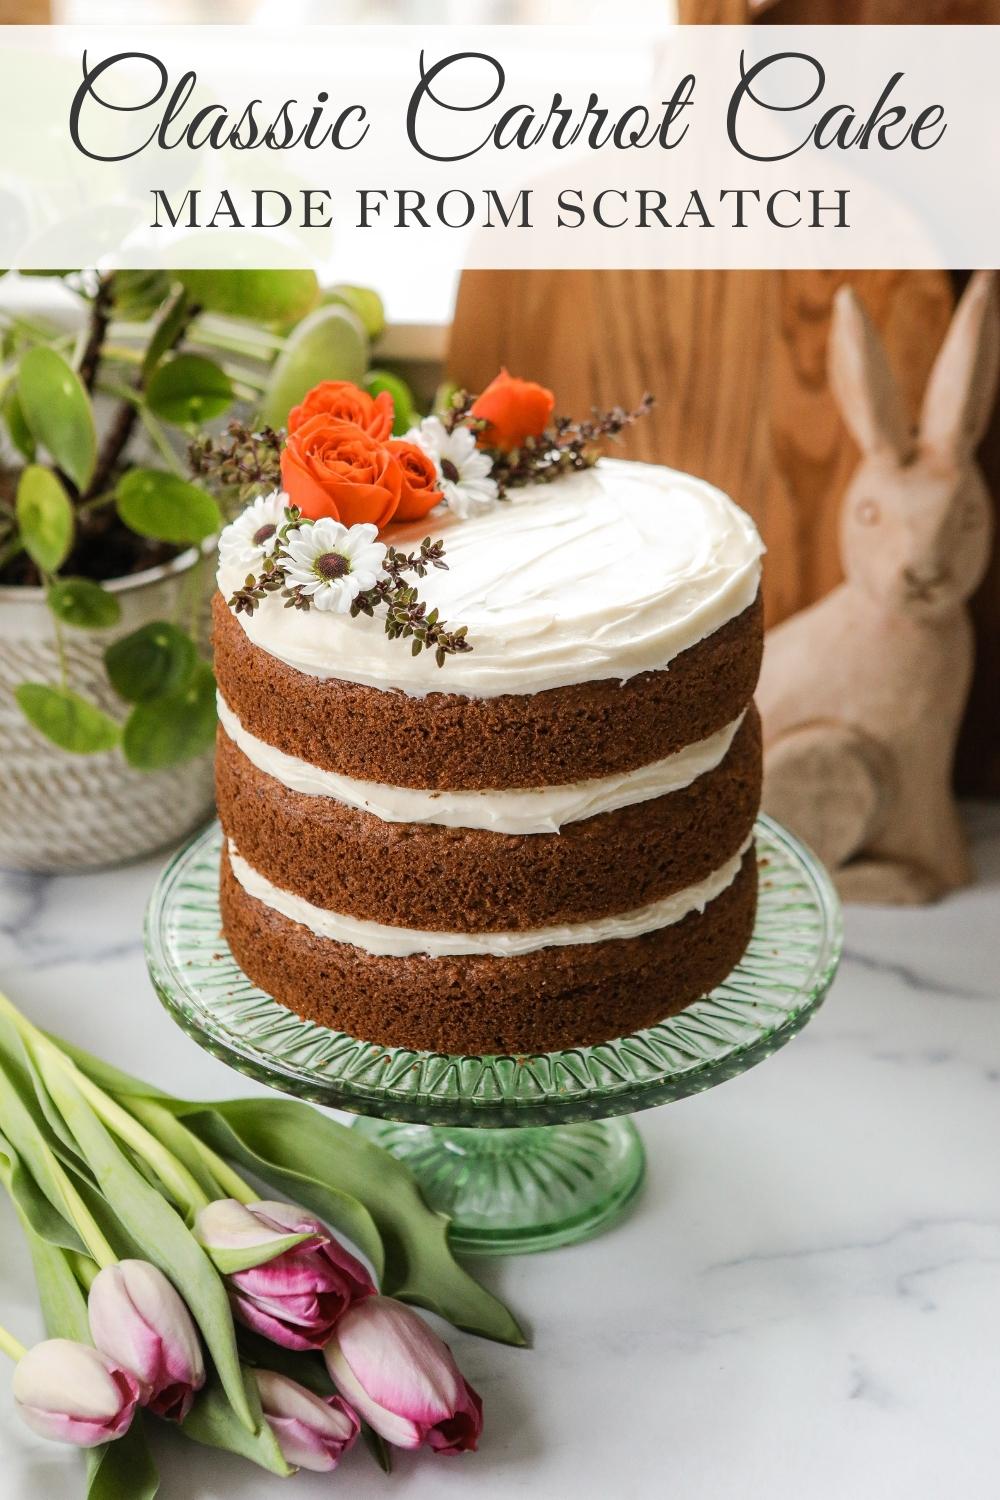 Carrot cake recipe from scratch